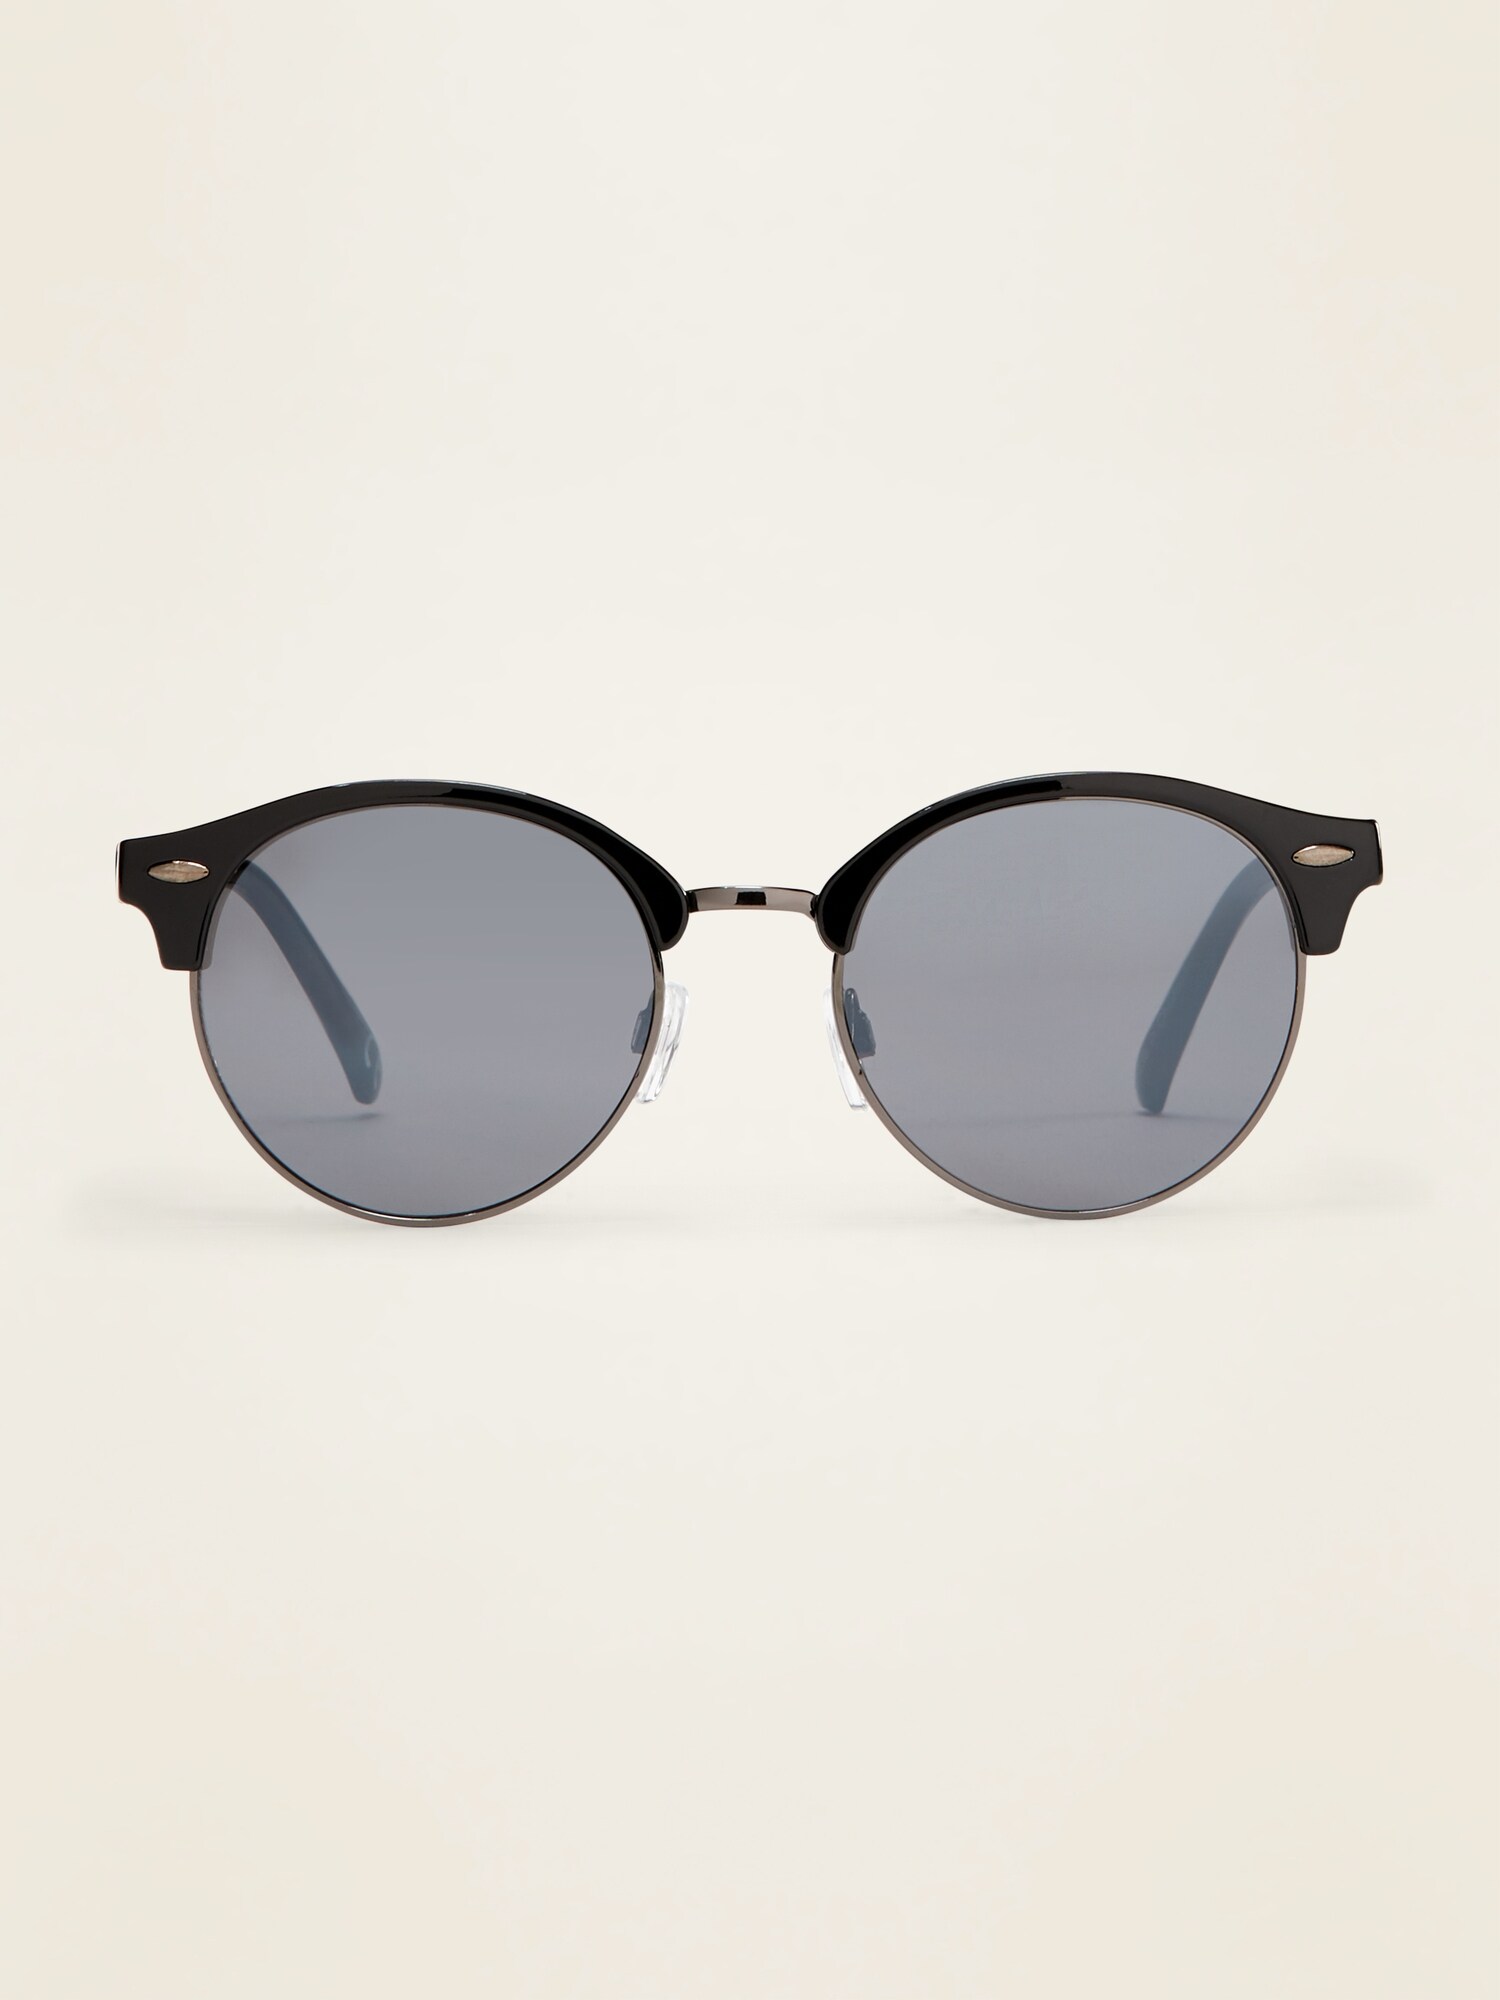 Half-Frame Sunglasses for Women